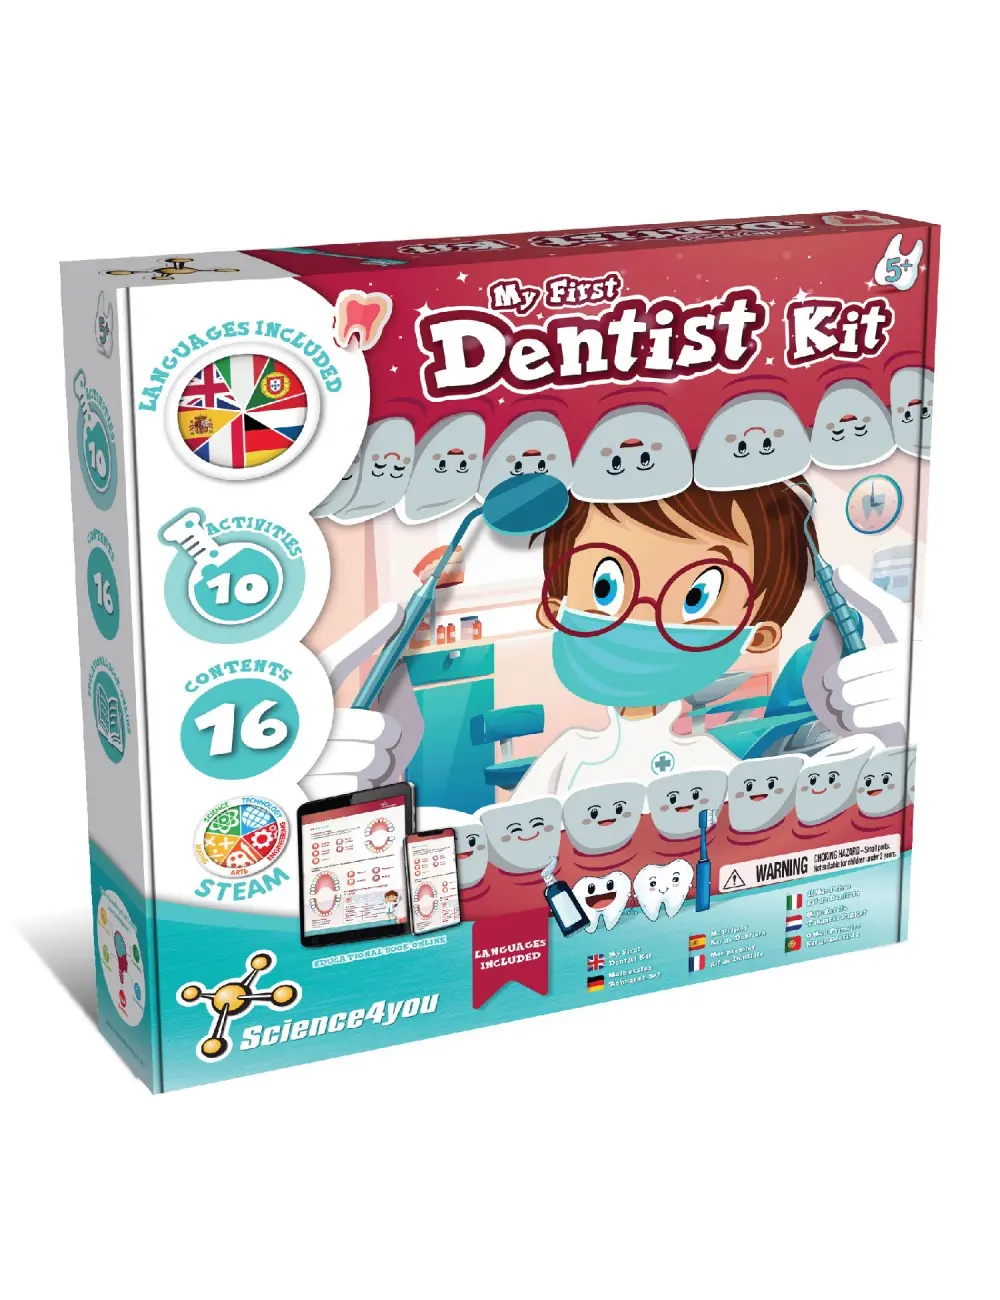 juegos de dentista para niños - Cómo ayudar a un niño a ir al dentista